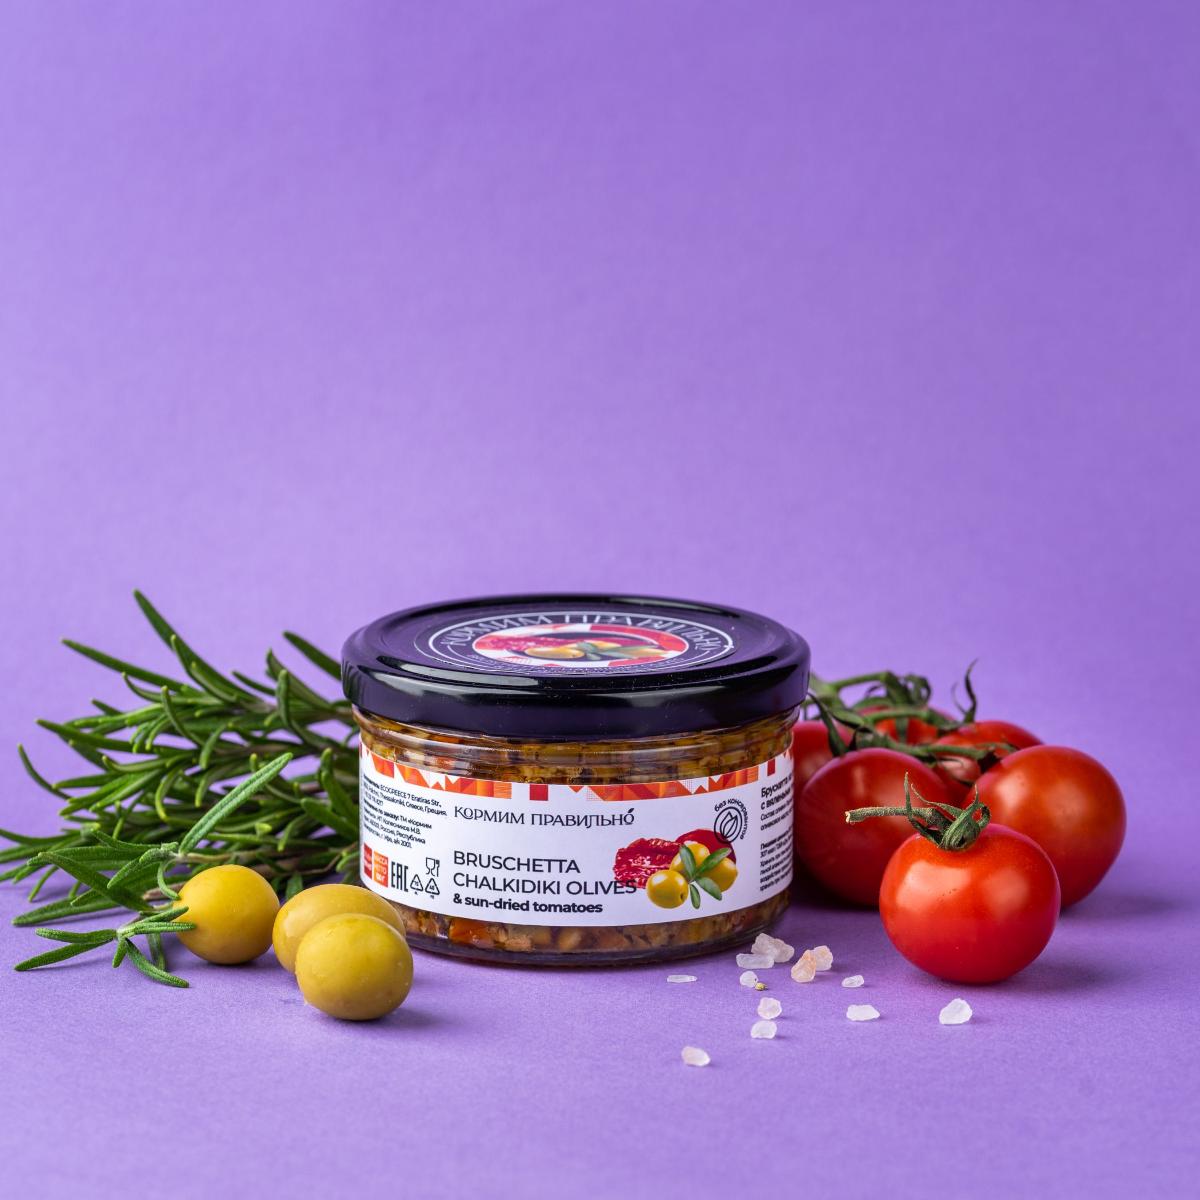 Брускетта из вяленых томатов в оливковом масле